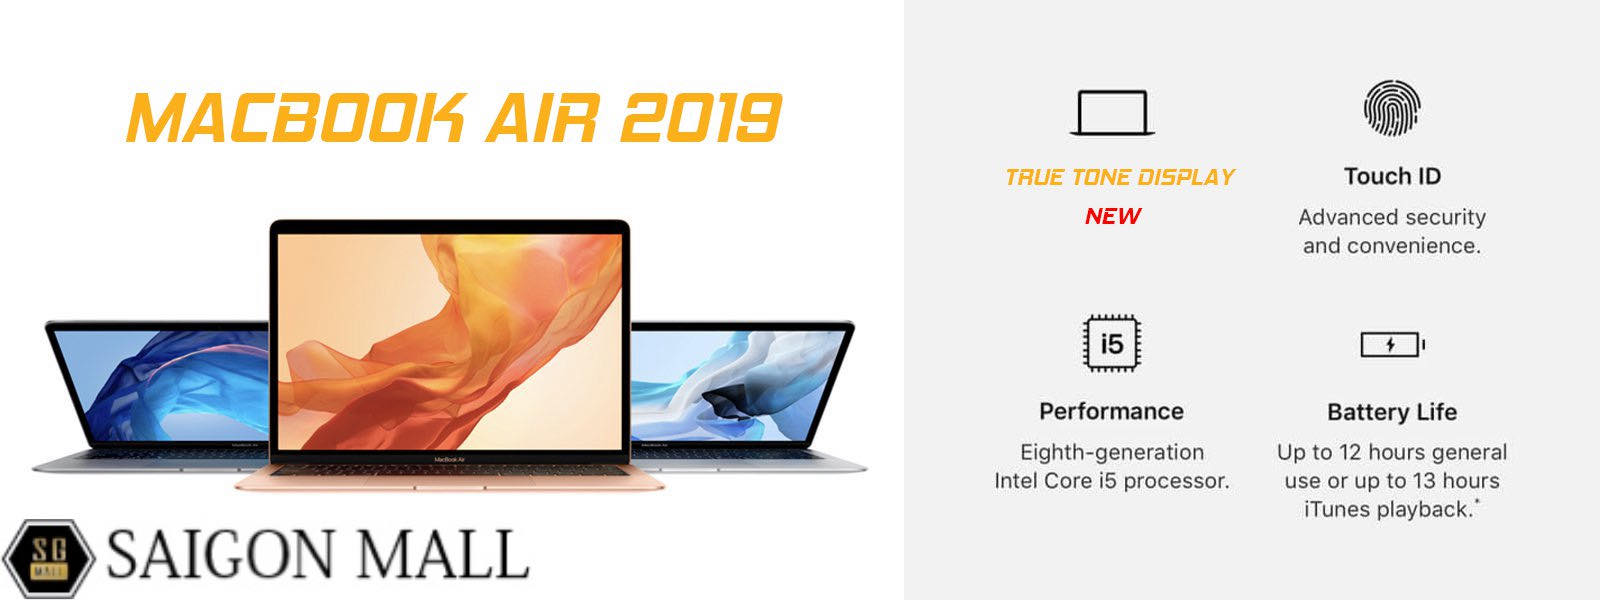 MacBook Air 2019 xách tay